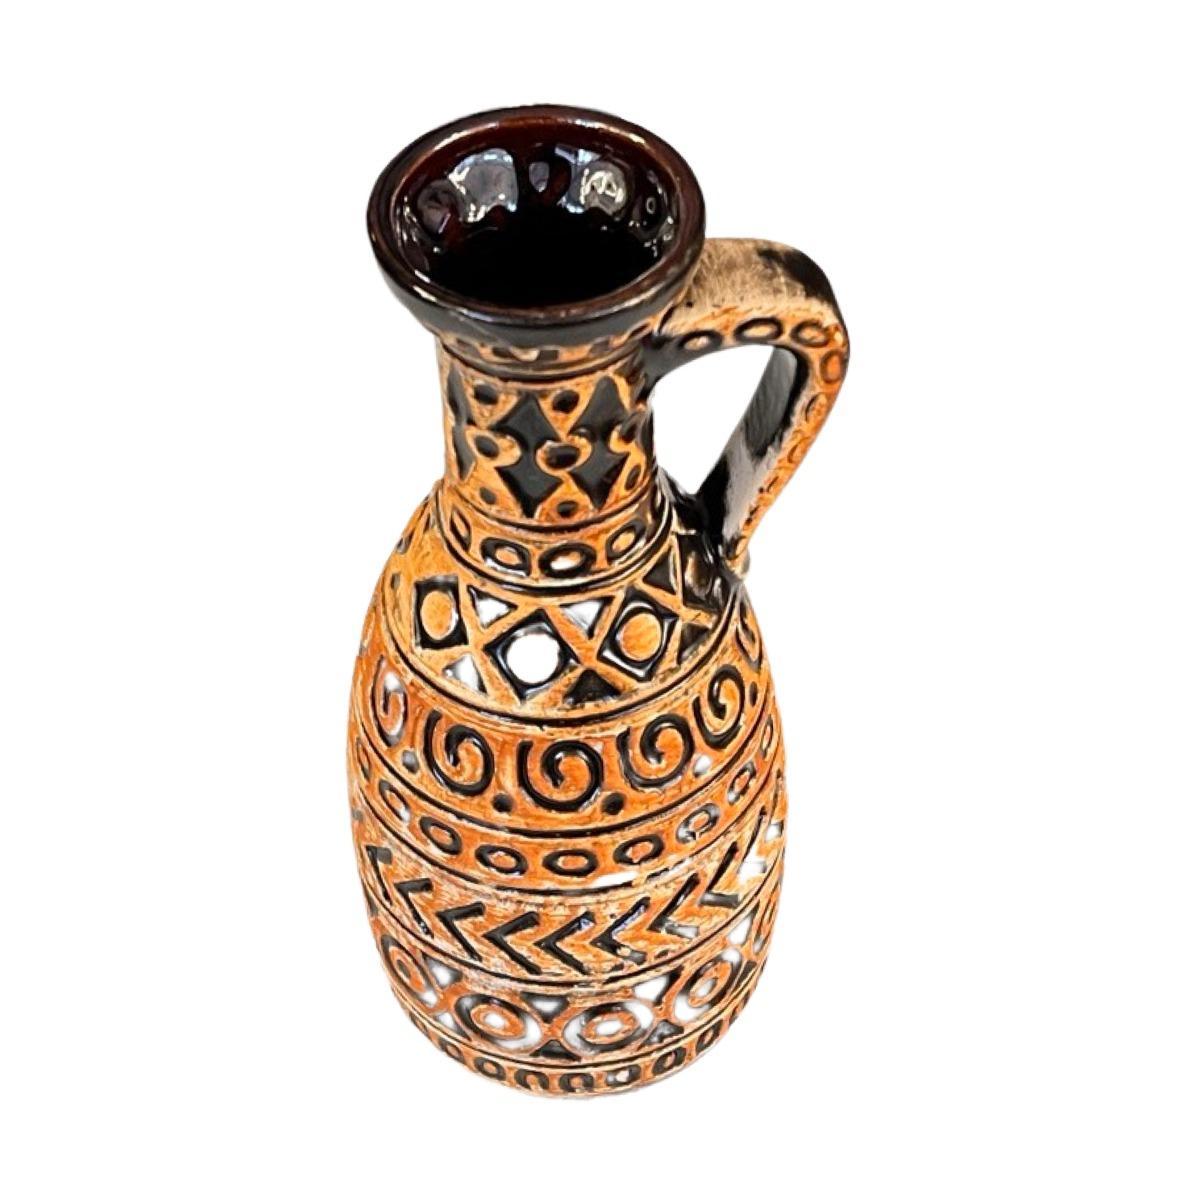 Wazon Bay Keramik 93 - 25 w kolorze ochry / czarnego, vintage Mid Century Modern, ceramika z Niemiec 1 Full Screen